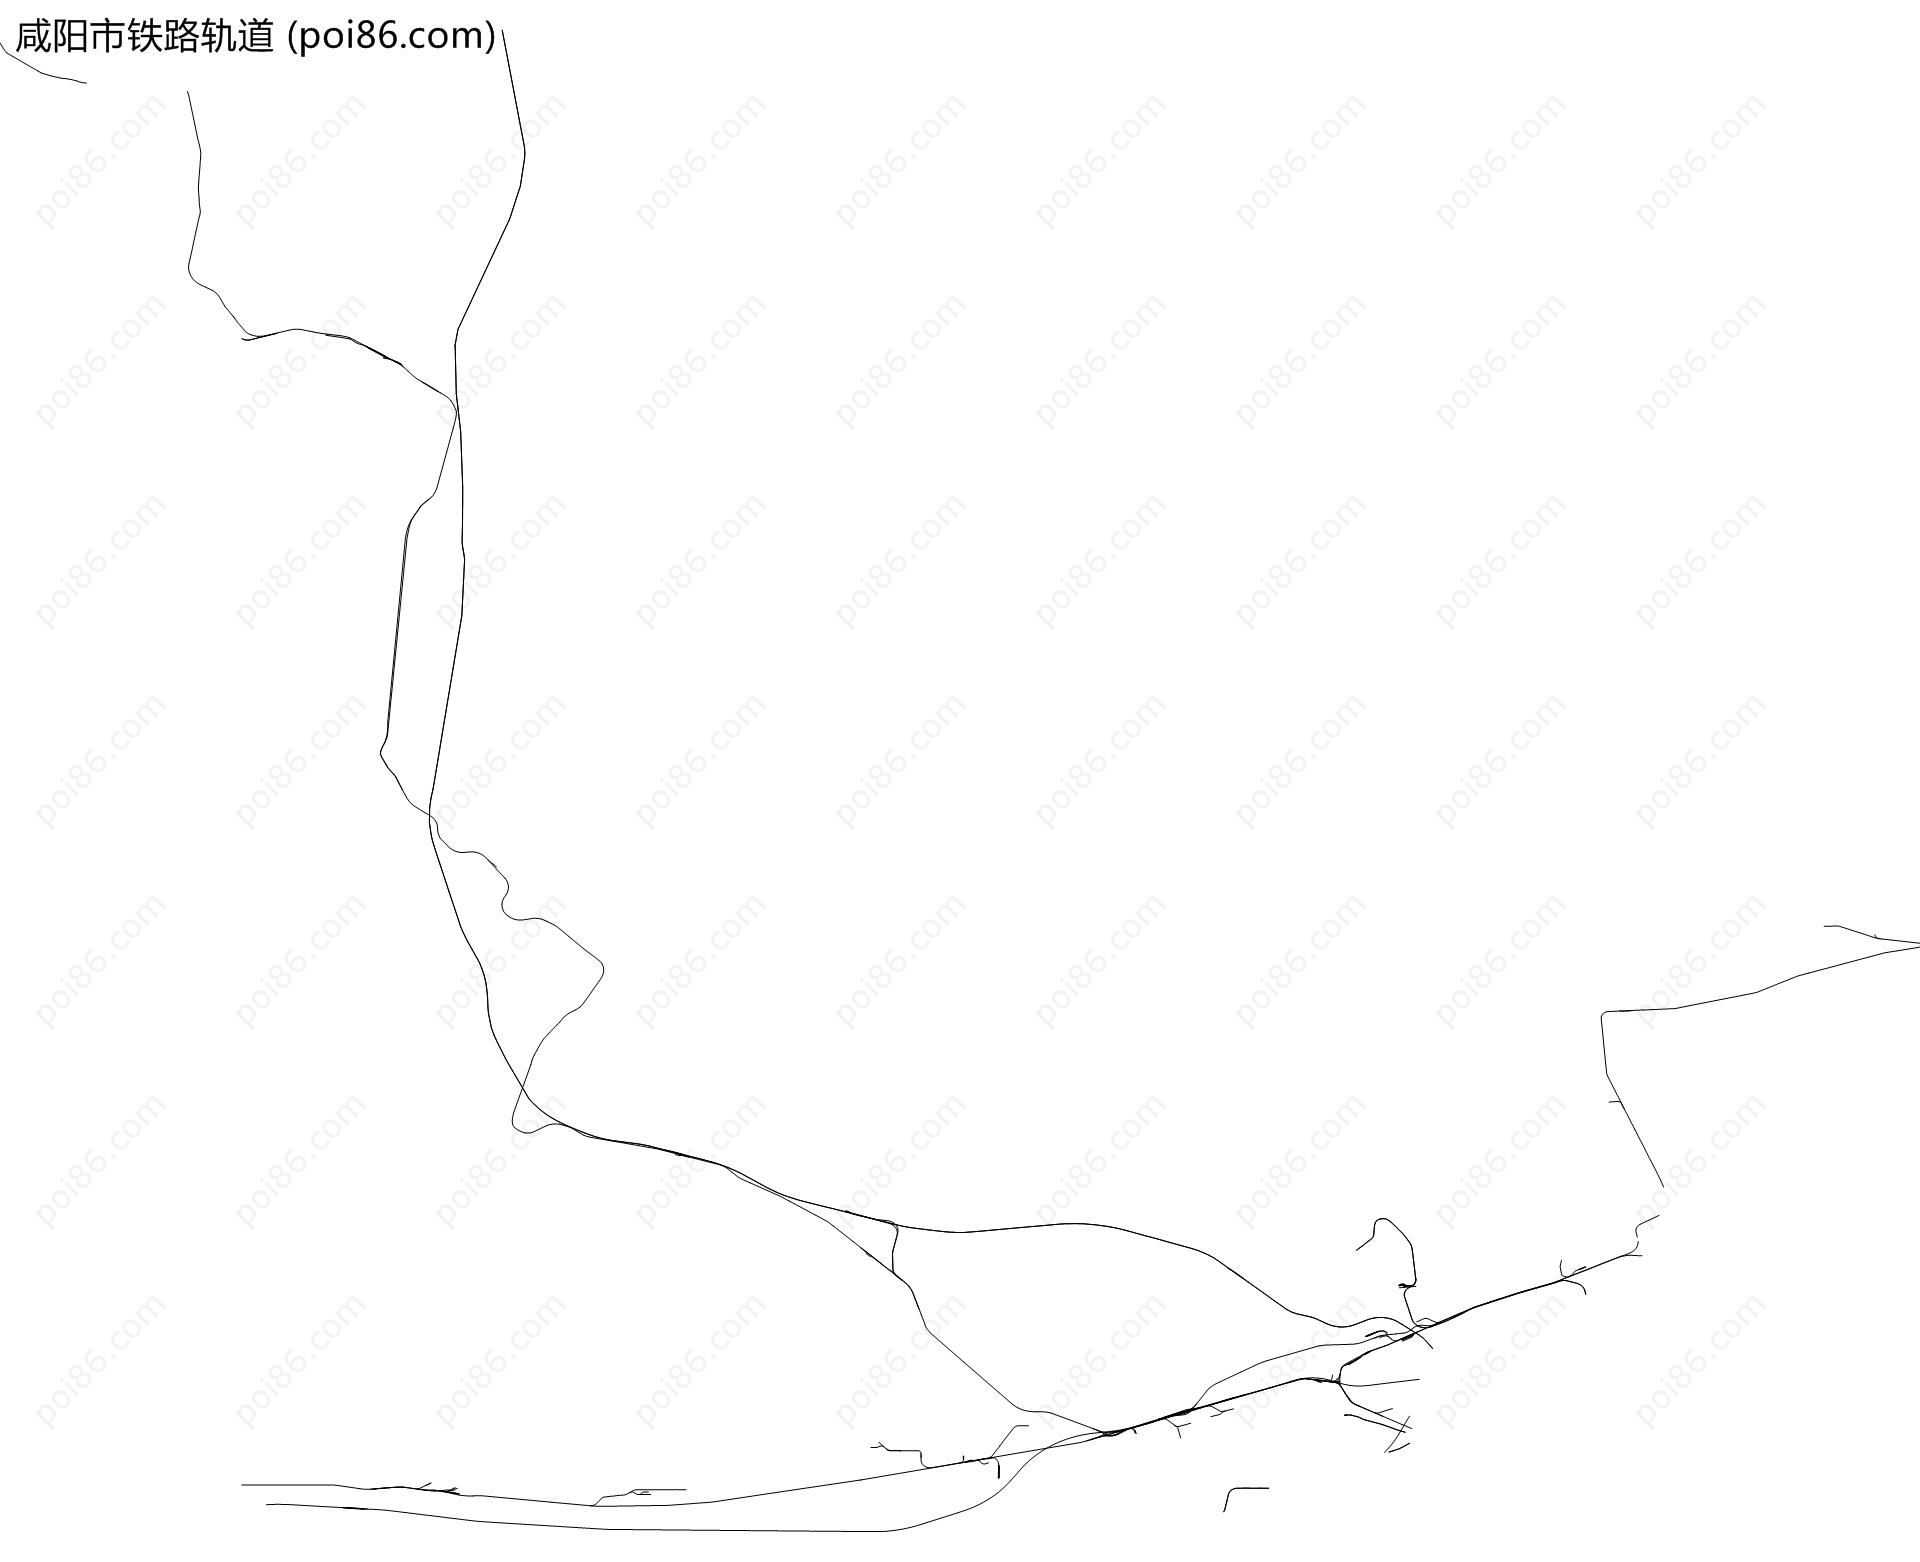 咸阳市铁路轨道地图